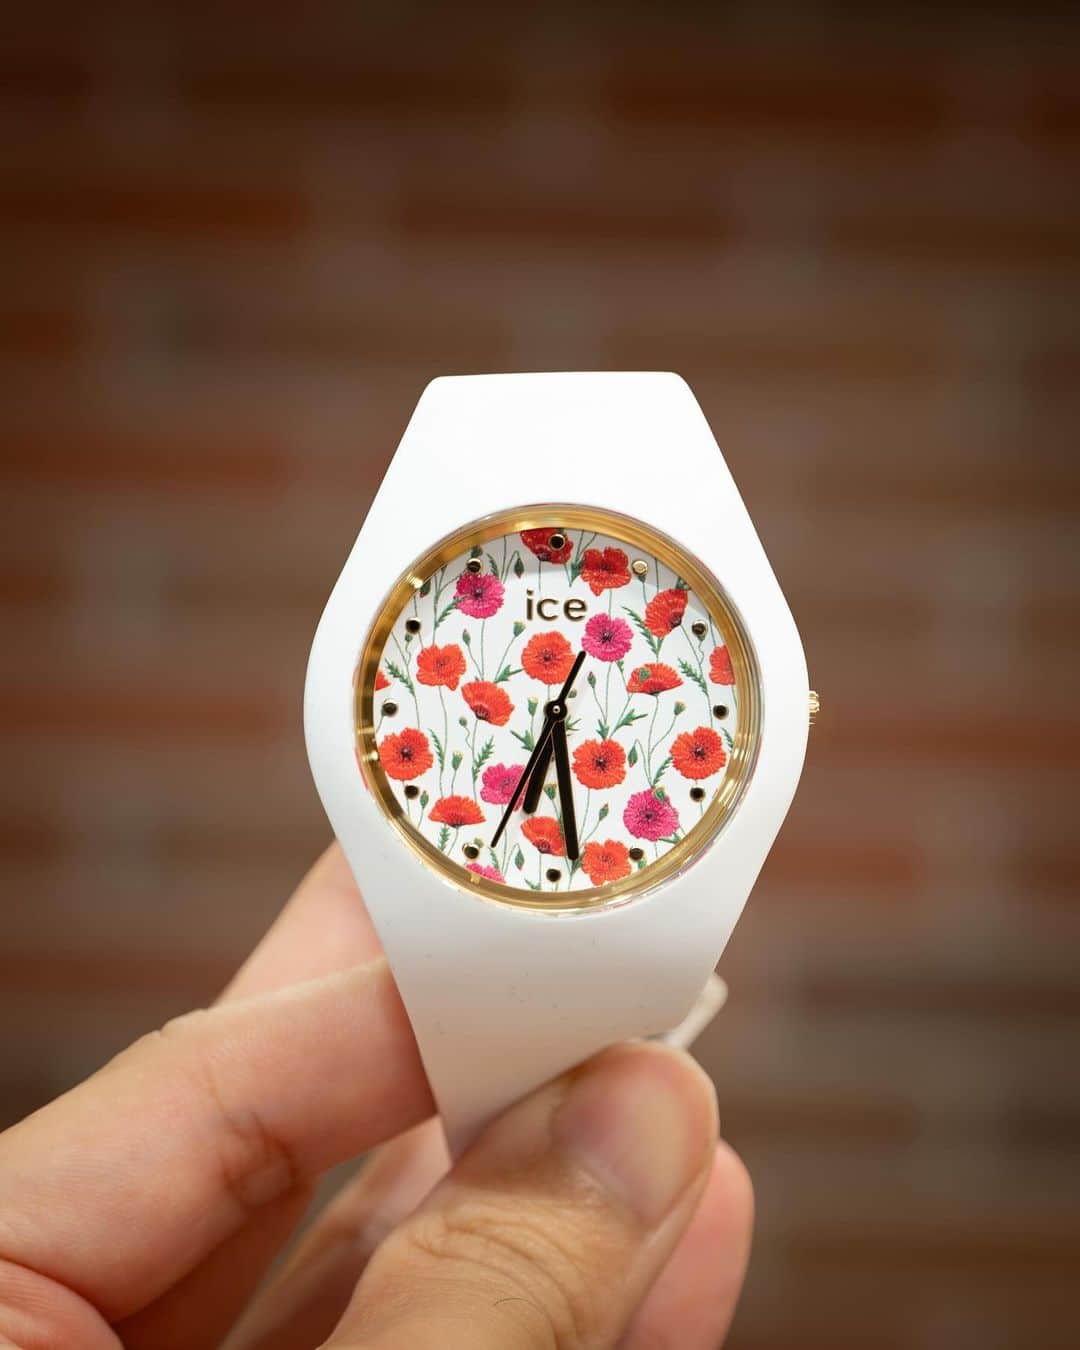 時計倉庫TOKIA 公式アカウントのインスタグラム：「⌚️ 【商品紹介】 ICE WATCH 016665  今回はICE WATCHをご紹介します！  コロンとしたデザインが特徴的なお時計です！ フェイスには花モチーフのプリントがデザインされており、存在感もばっちりなのでプレゼントにおすすめのお時計です！また、サイズ展開が小さいものと大きいものの2種類あるので、親子や姉妹でペアルックにしてもかわいいです！  大きさや実際の色味など、ぜひ店頭でお試しください！スタッフ一同、心よりお待ちしております🙇‍♀️  ……………………………………………………….................  ☟オンラインショップはプロフィールURLから☟ @tokia_official  ……………………………………………………….................  #時計倉庫 #時計倉庫tokia #腕時計 #watch #手表 #腕元倶楽部 #腕時計好きな人と繋がりたい #icewatch」